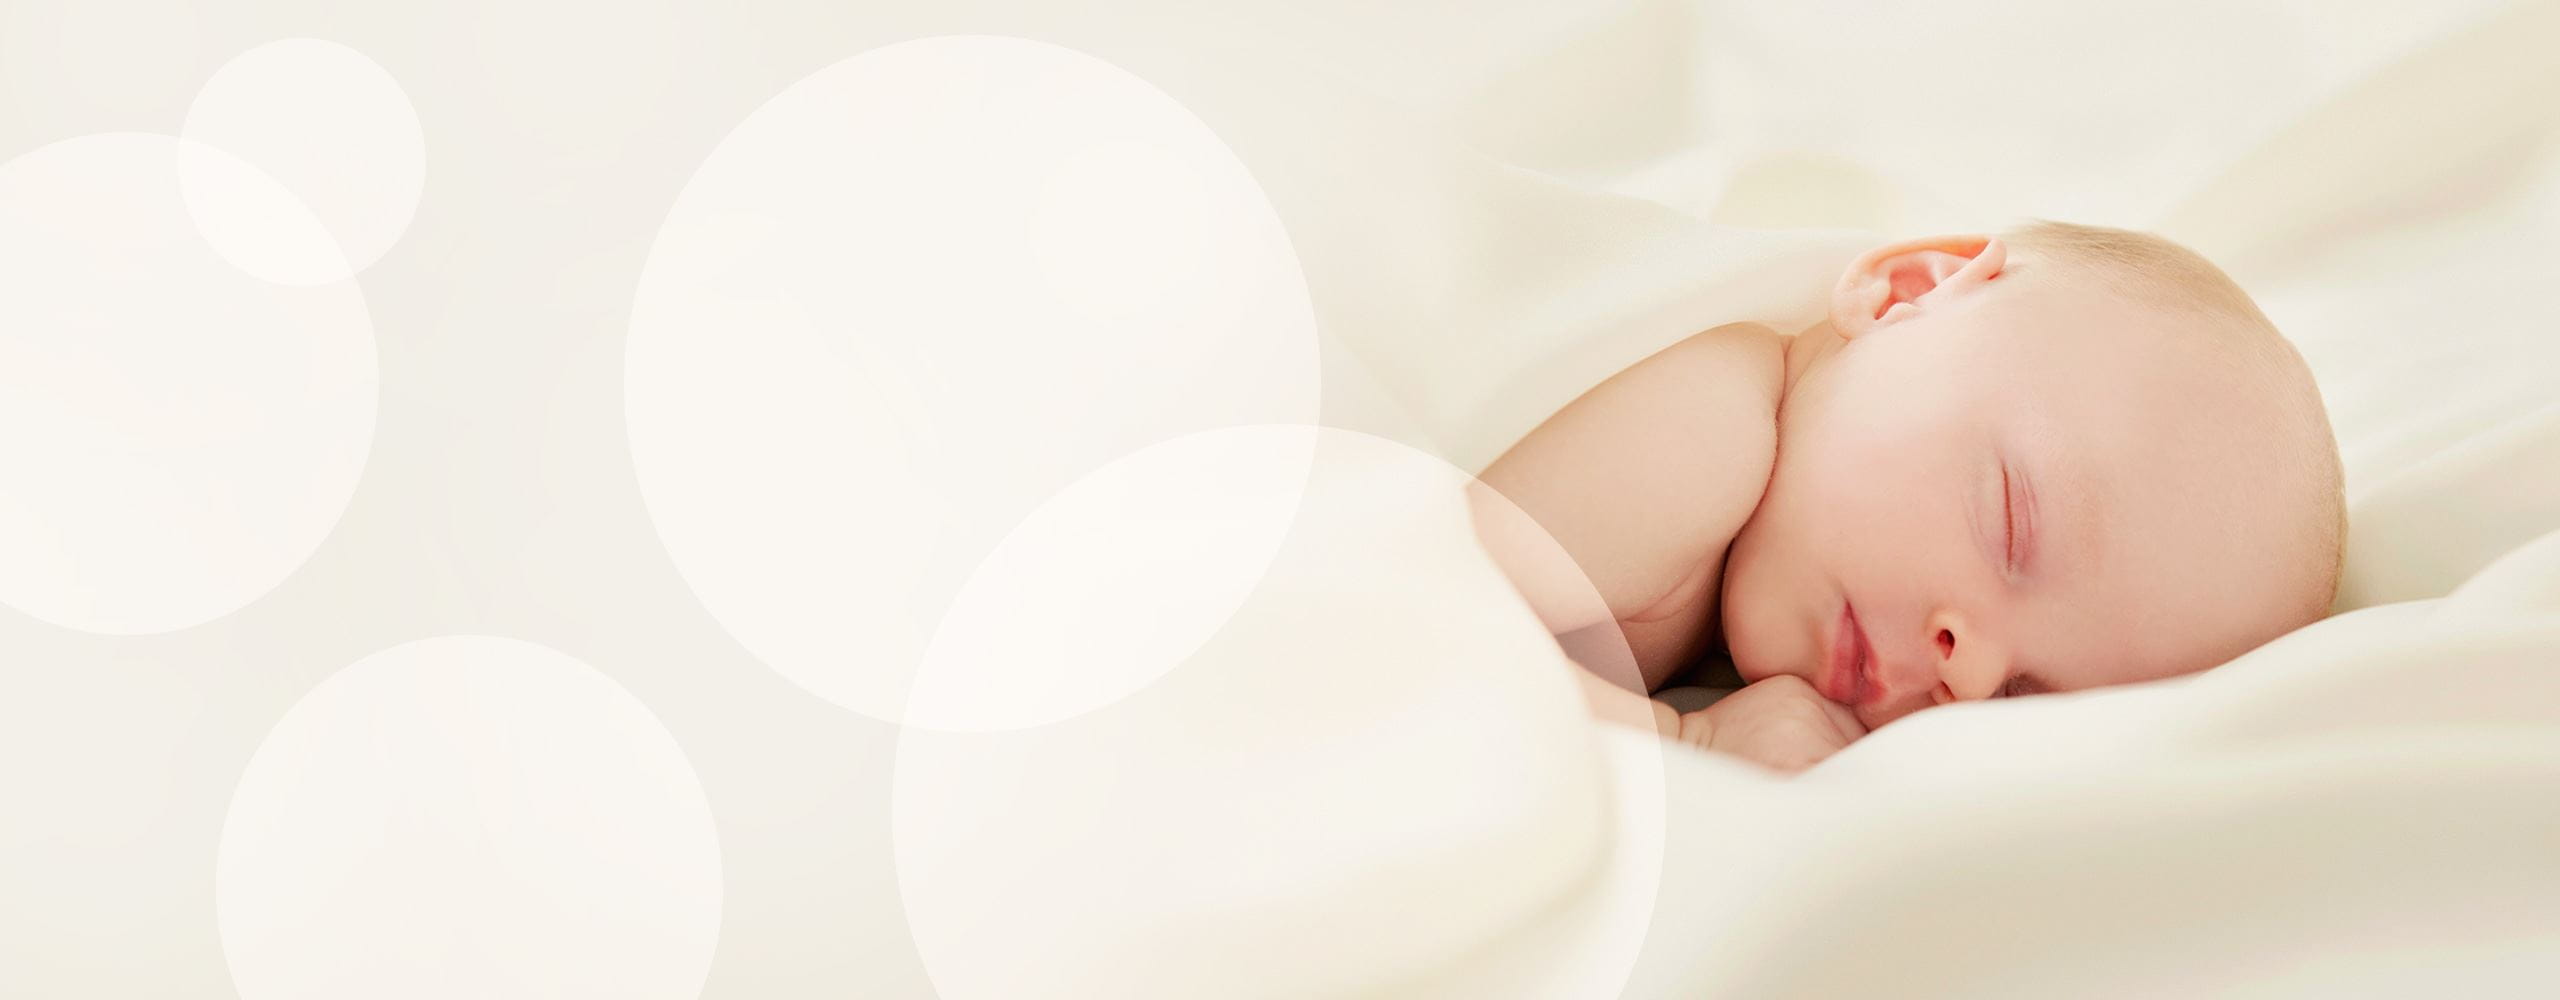 Ciemiączko u noworodka – poznaj podstawowe fakty